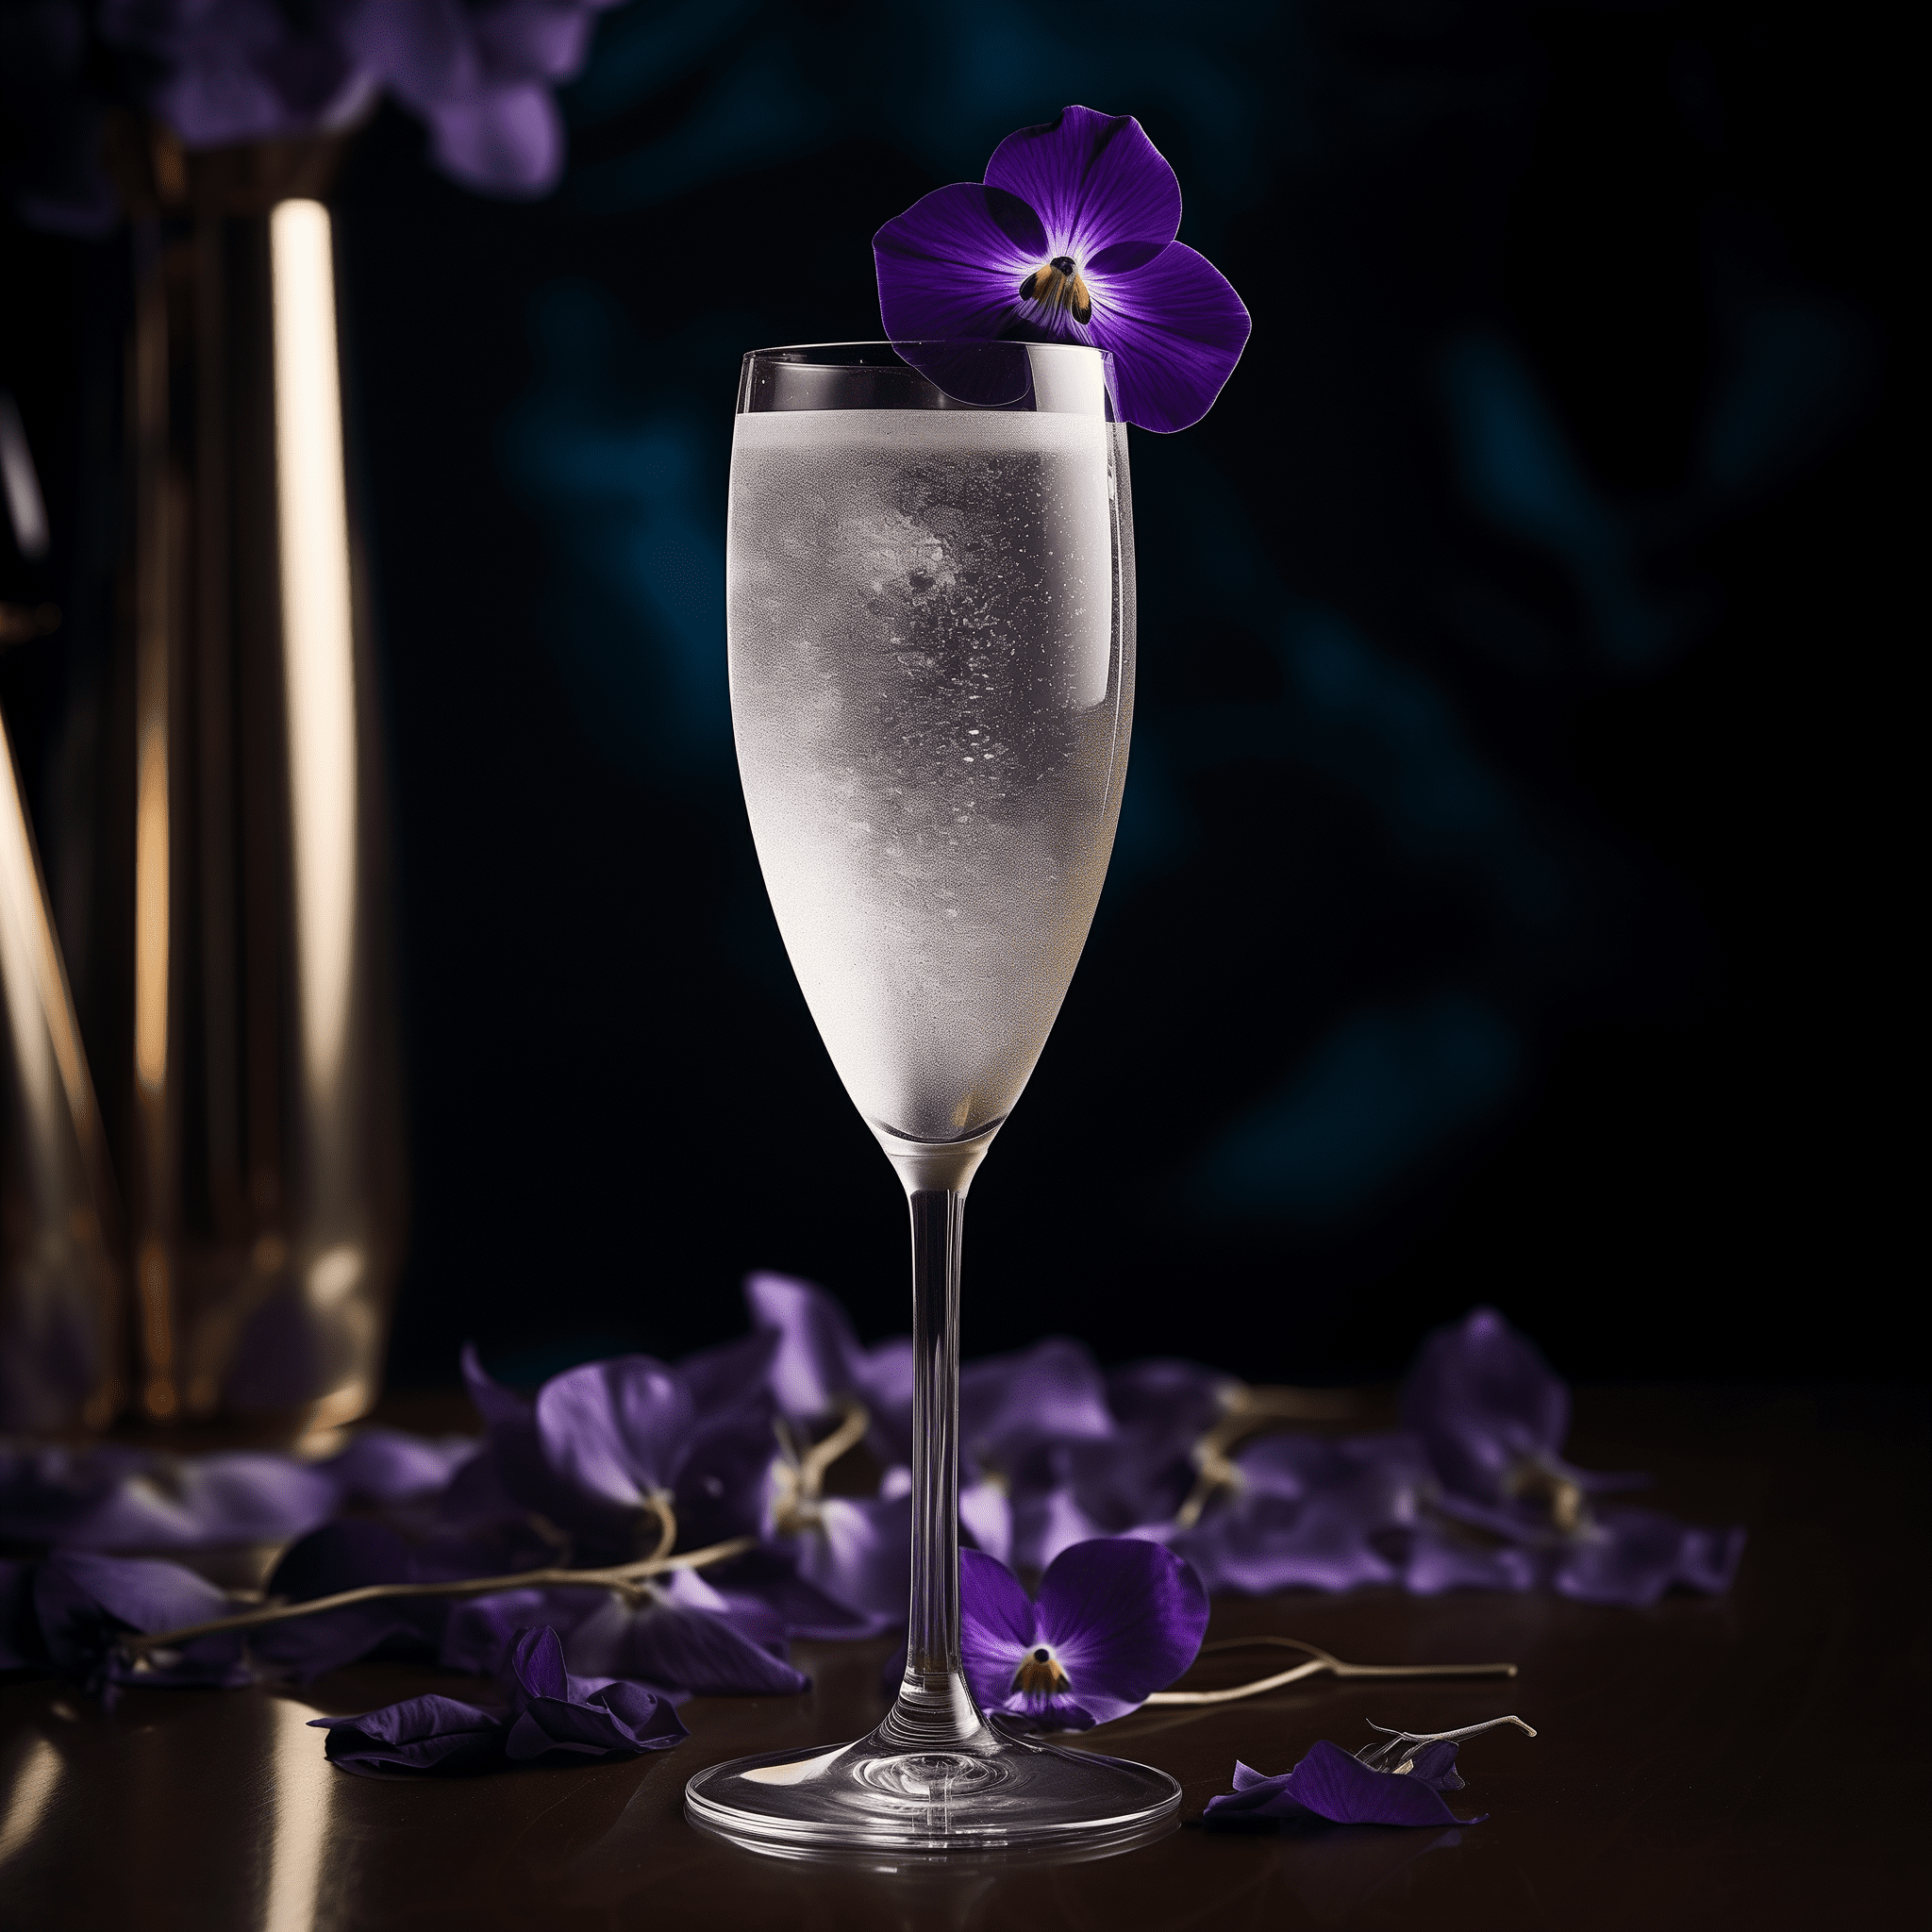 Grey Ghost Cóctel Receta - El Grey Ghost es un cóctel delicadamente dulce con un bouquet floral que se despliega suavemente en el paladar. La efervescencia del Champagne Brut añade una frescura crujiente, equilibrando las suaves notas de violeta y flor de saúco.